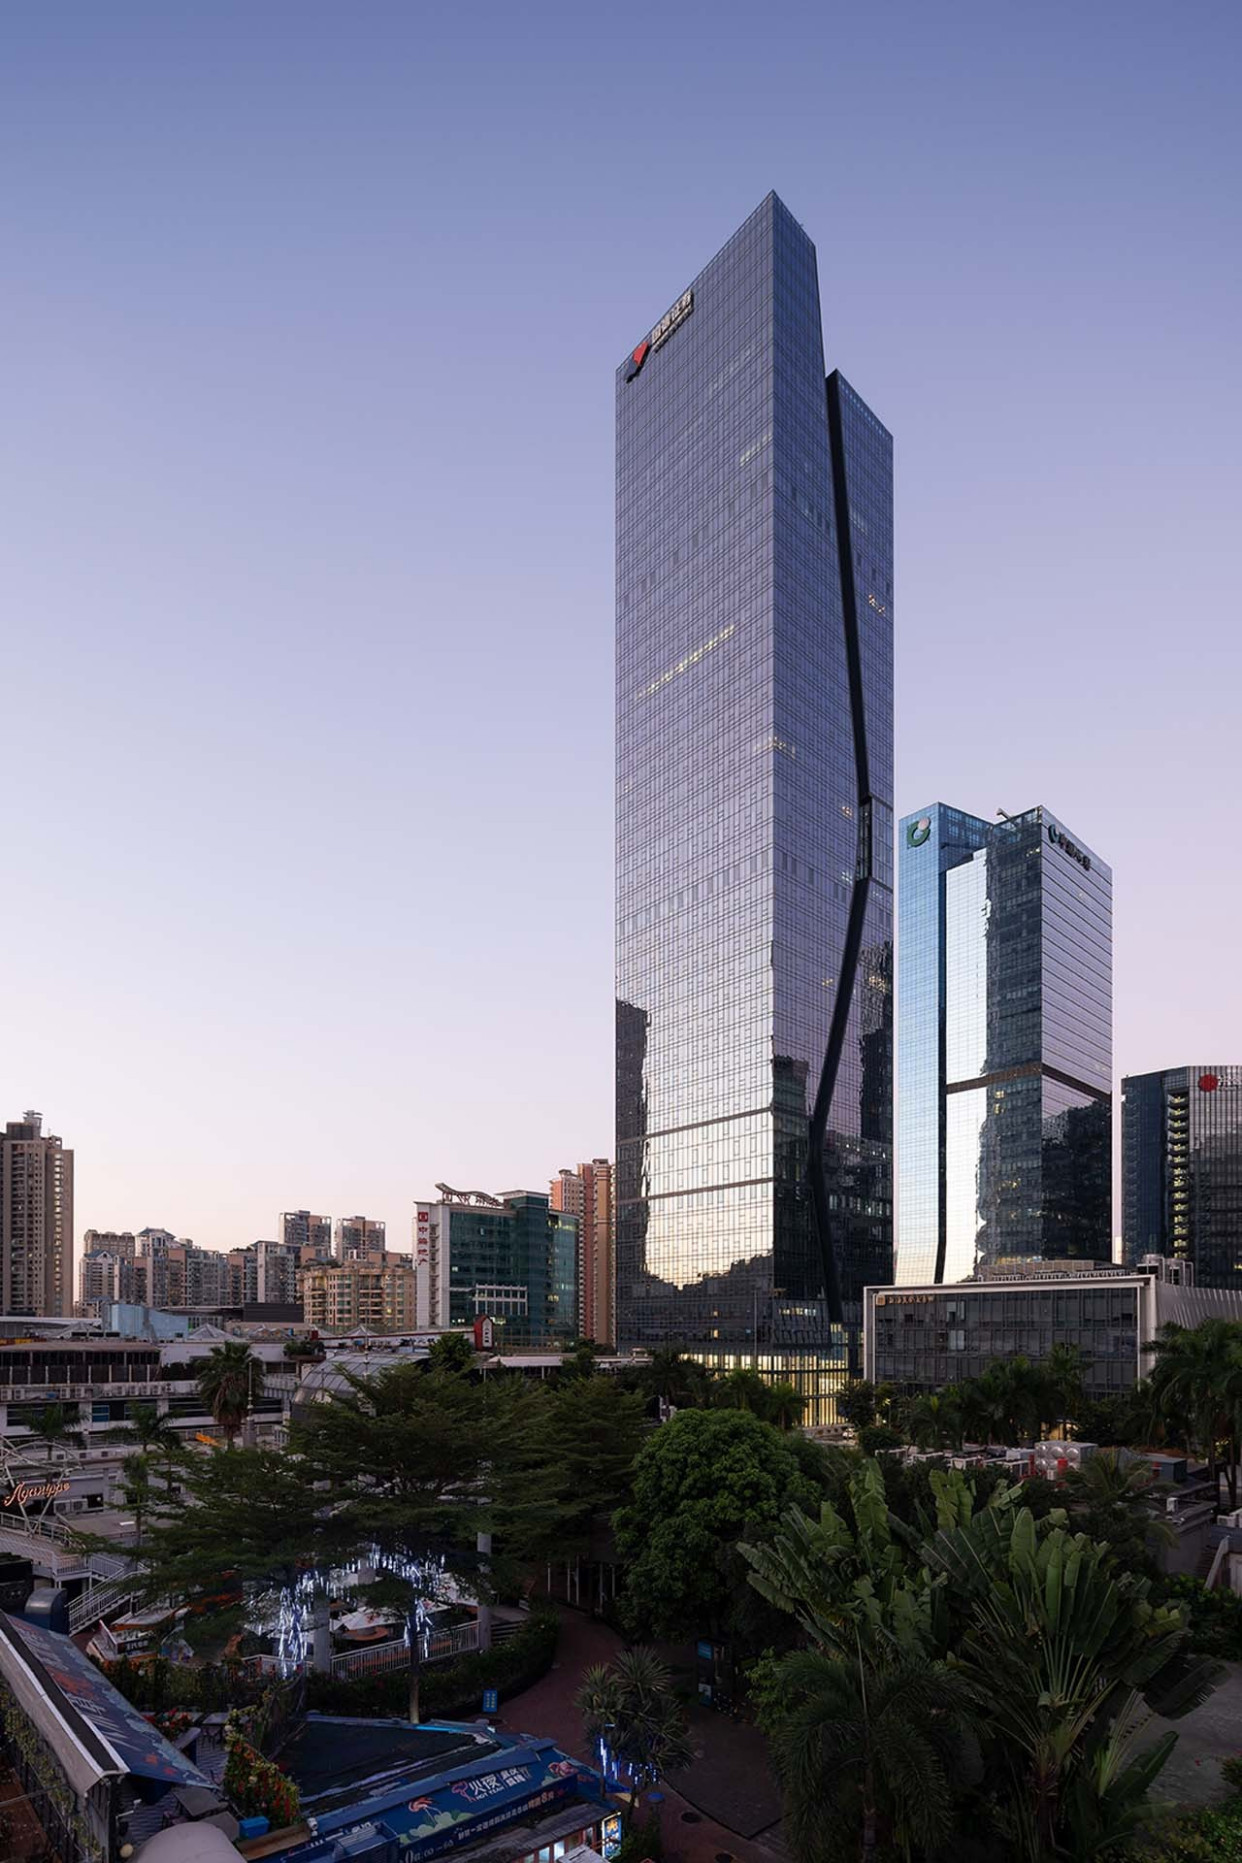 高228米!国信证券大厦,空隙形状打造深圳新地标